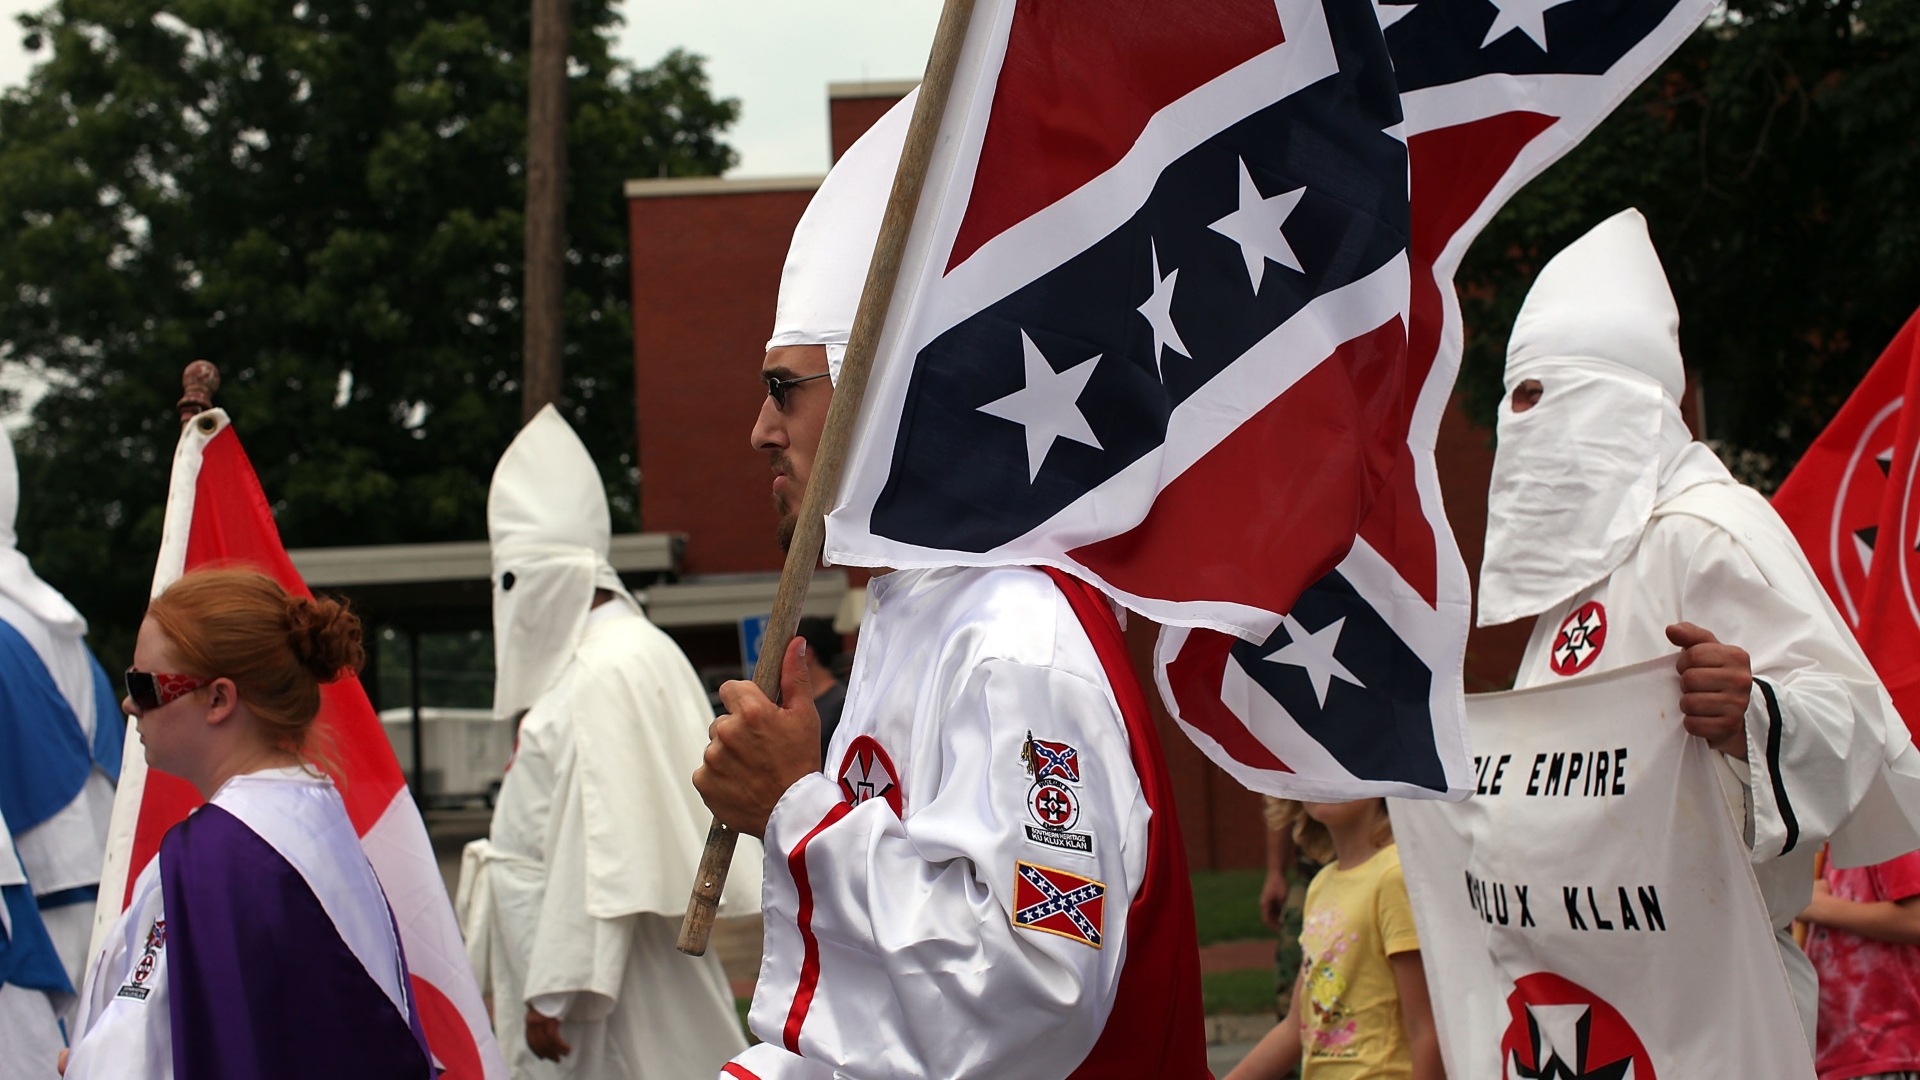 La historia del Ku Klux Klan, su inesperado resurgimiento y por qué deberíamos preocuparnos